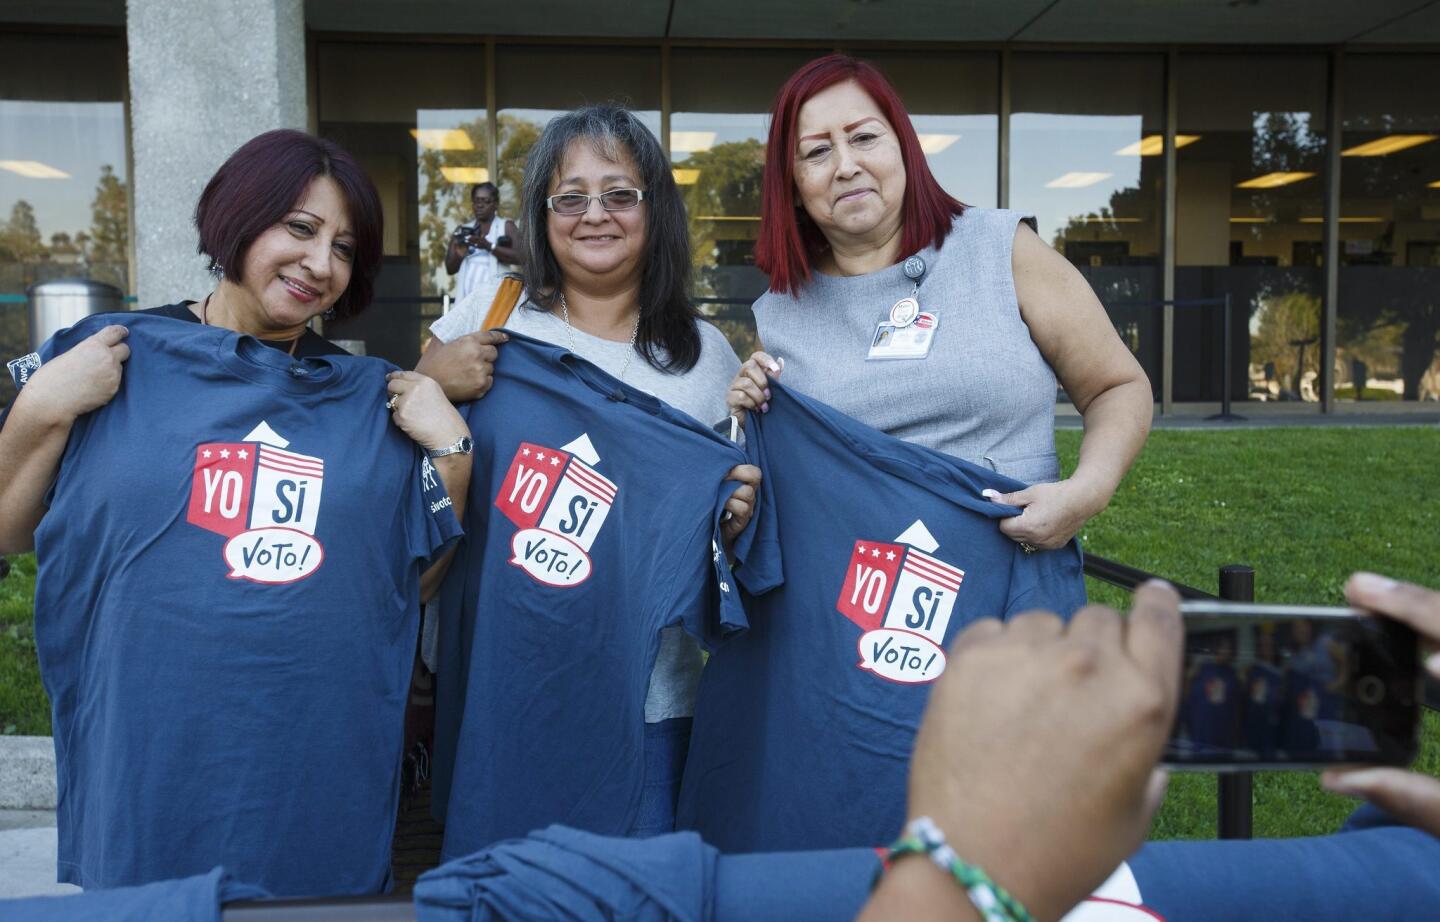 Unas mujeres latinas posan con una camiseta con la leyemda "Yo sí voto!" tras emitir su sufragio durante la elecciones presidenciales en un colegio electoral de Norwalk, California.